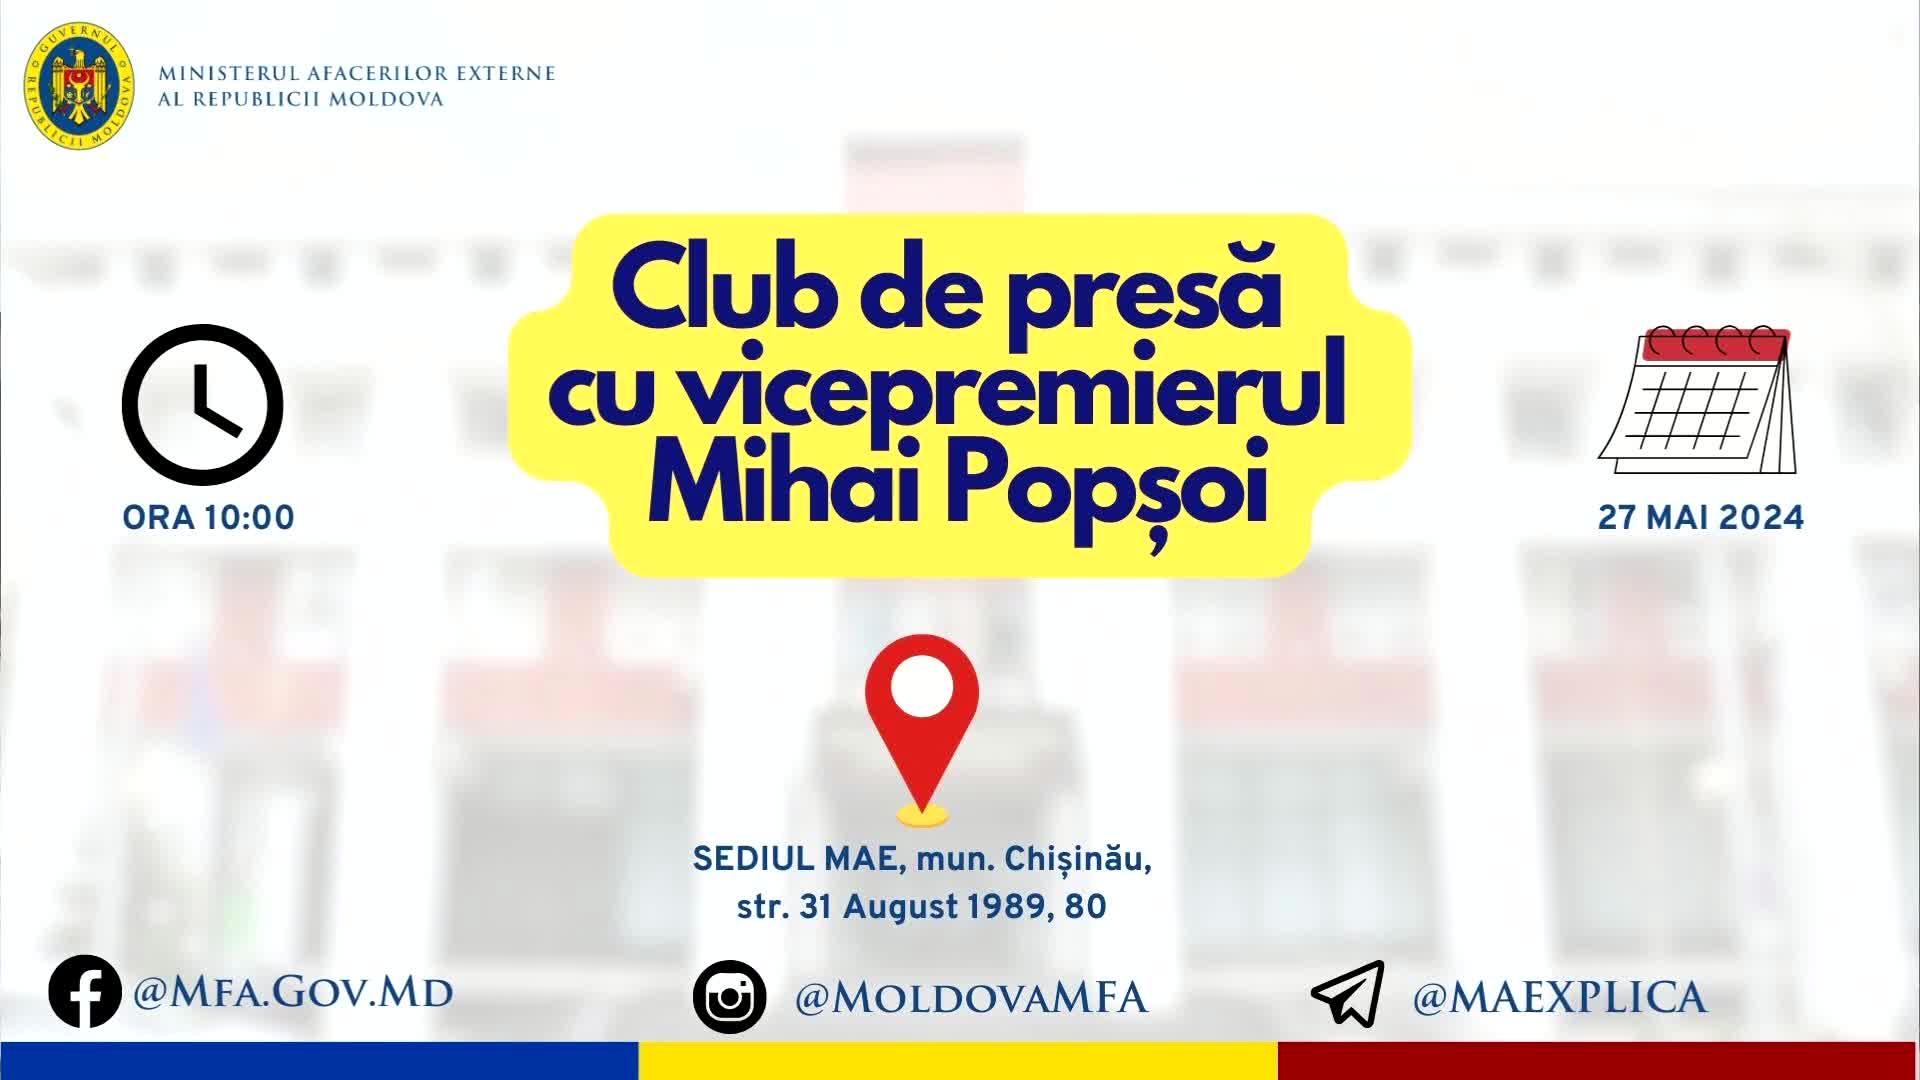 Club de presă cu vicepremierul și ministrul afacerilor externe al Republicii Moldova, Mihai Popșoi